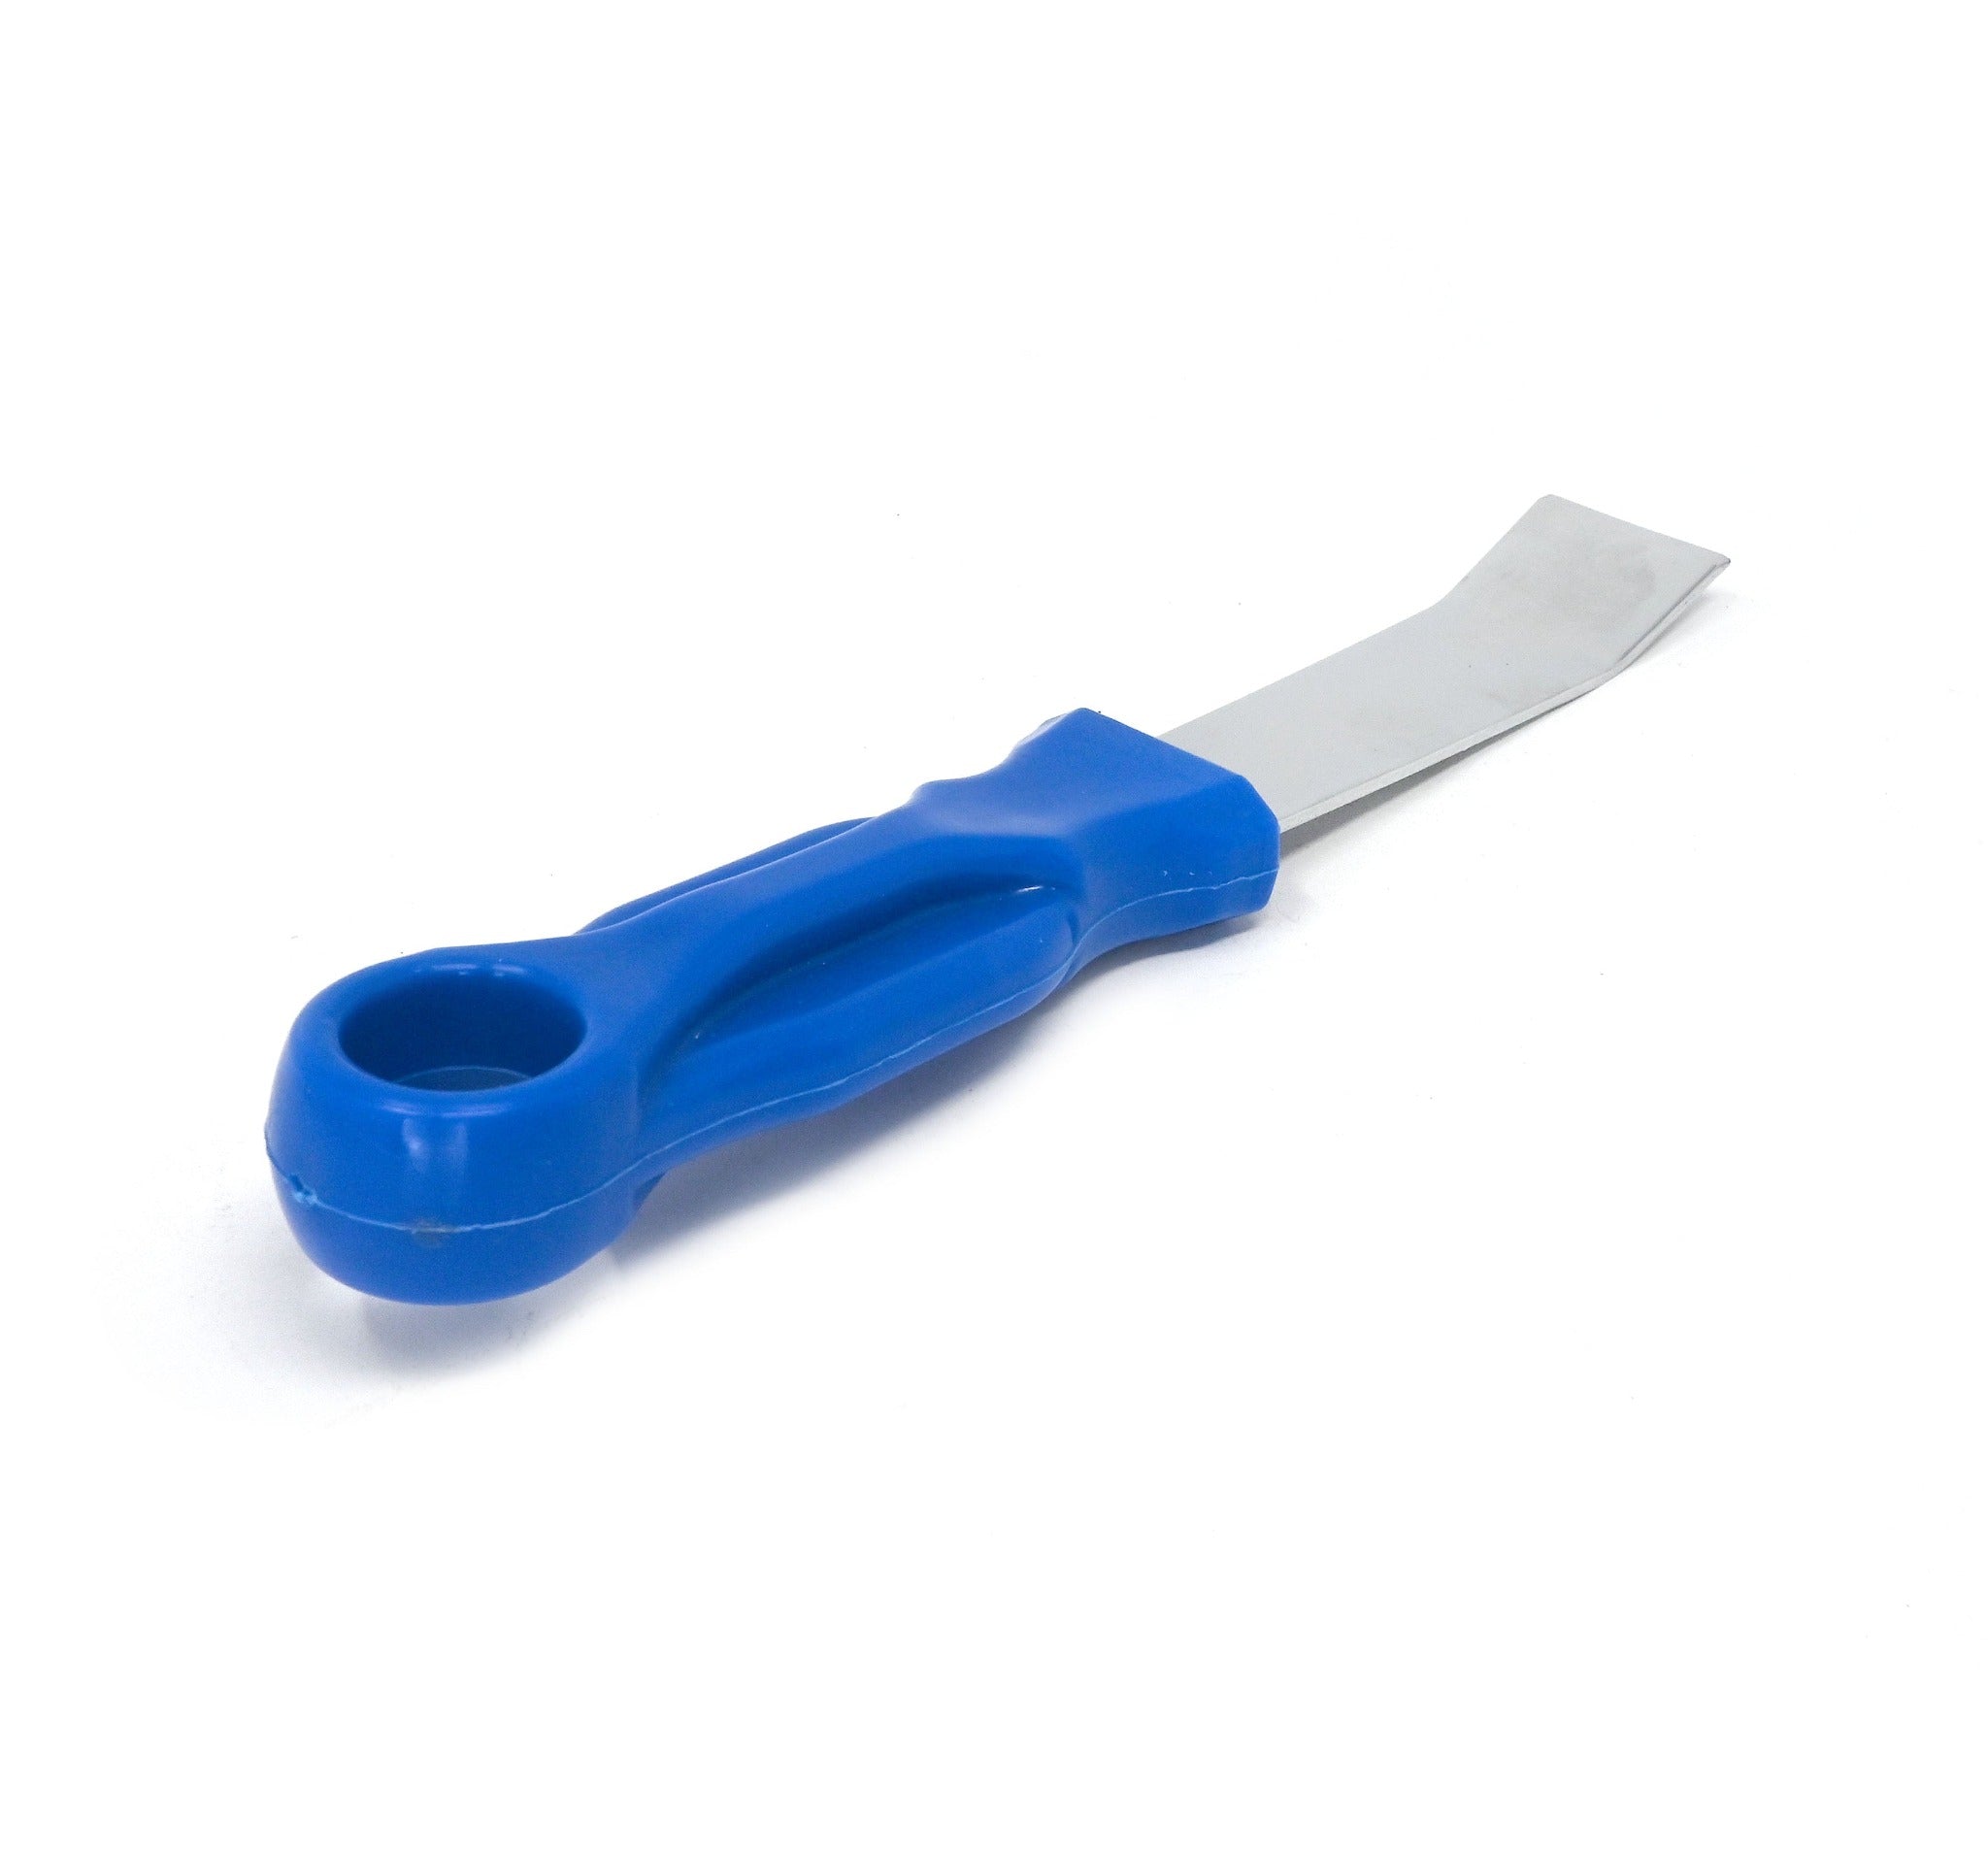 Metal Blade wheel weight removal tool/scraper   Blue Handle